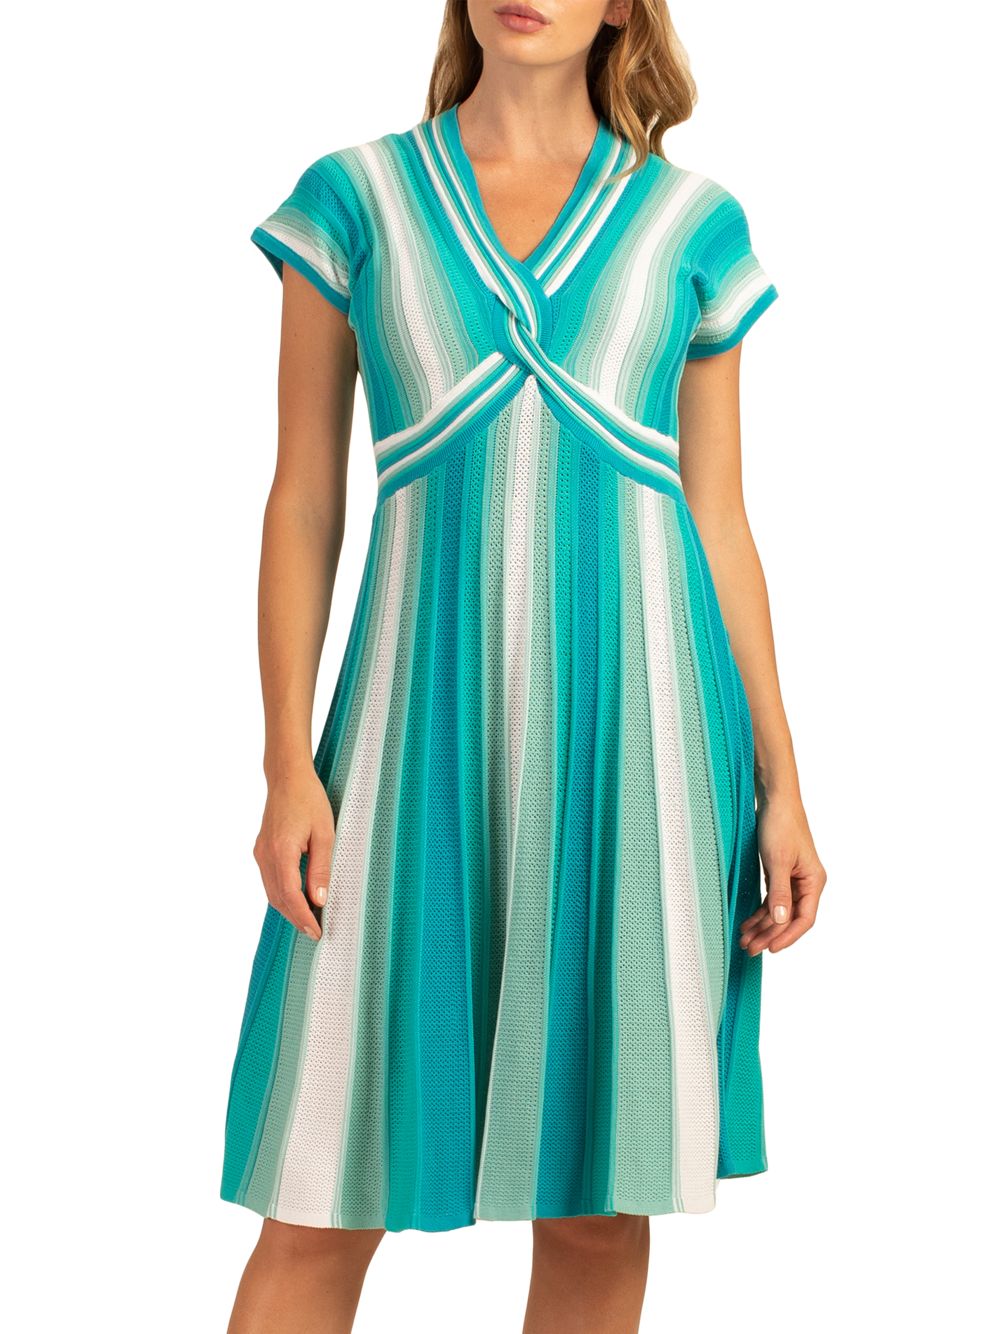 Плиссированное трикотажное платье Bonet Trina Turk, синий